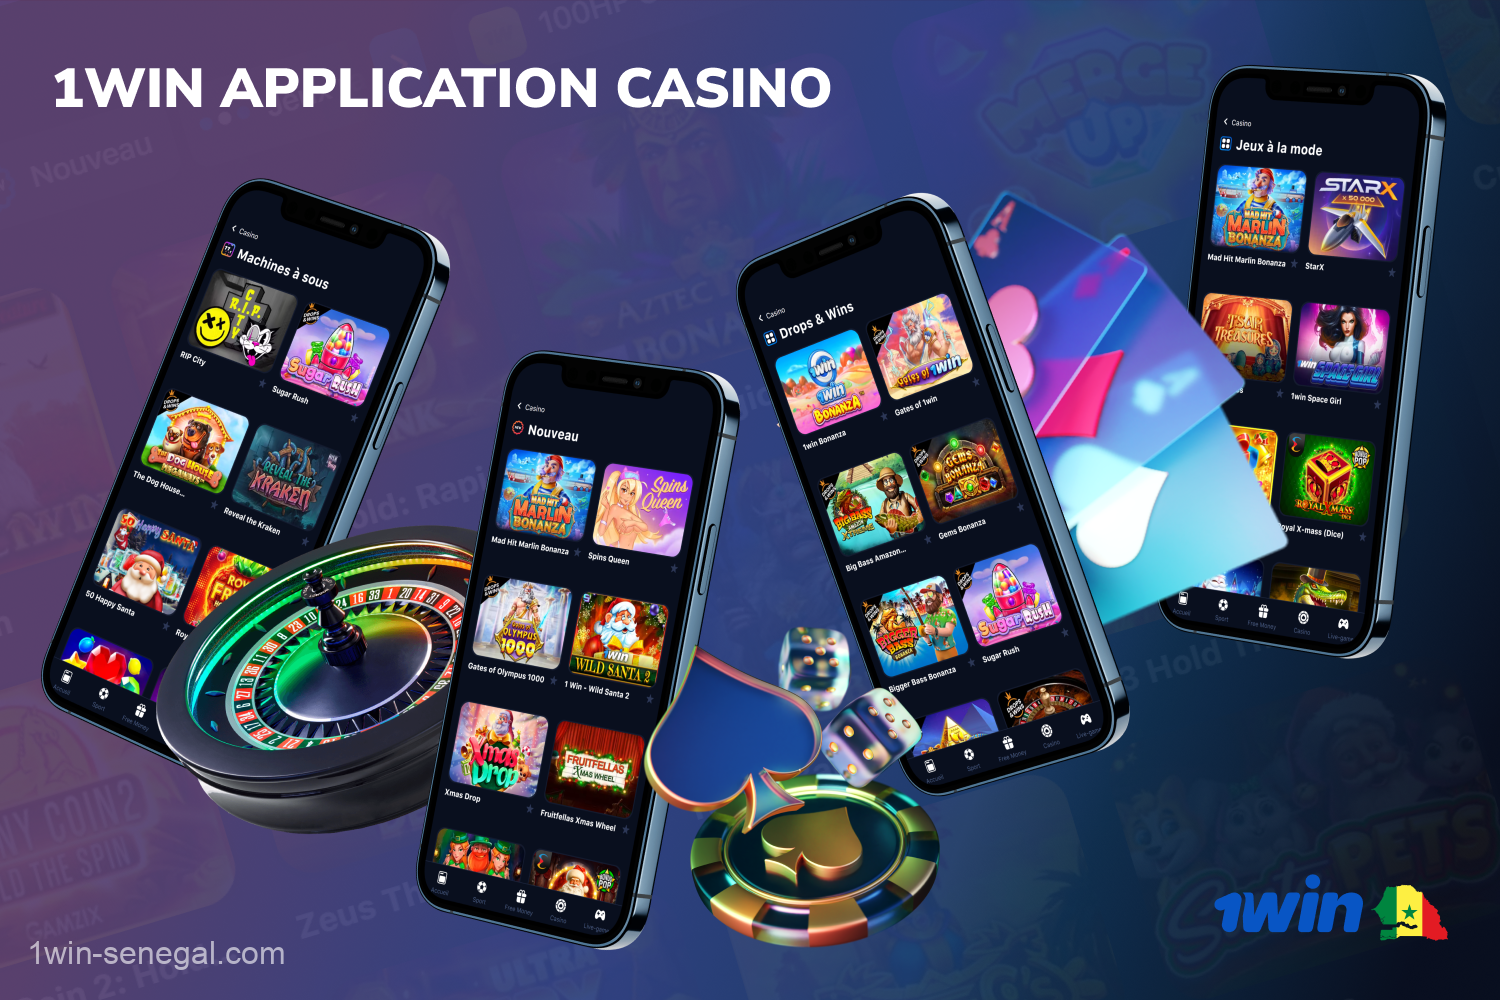 Les utilisateurs sénégalais de 1win peuvent jouer aux jeux rapides, aux machines à sous, au poker et à d'autres jeux de casino en téléchargeant l'application mobile rapide et pratique pour les smartphones